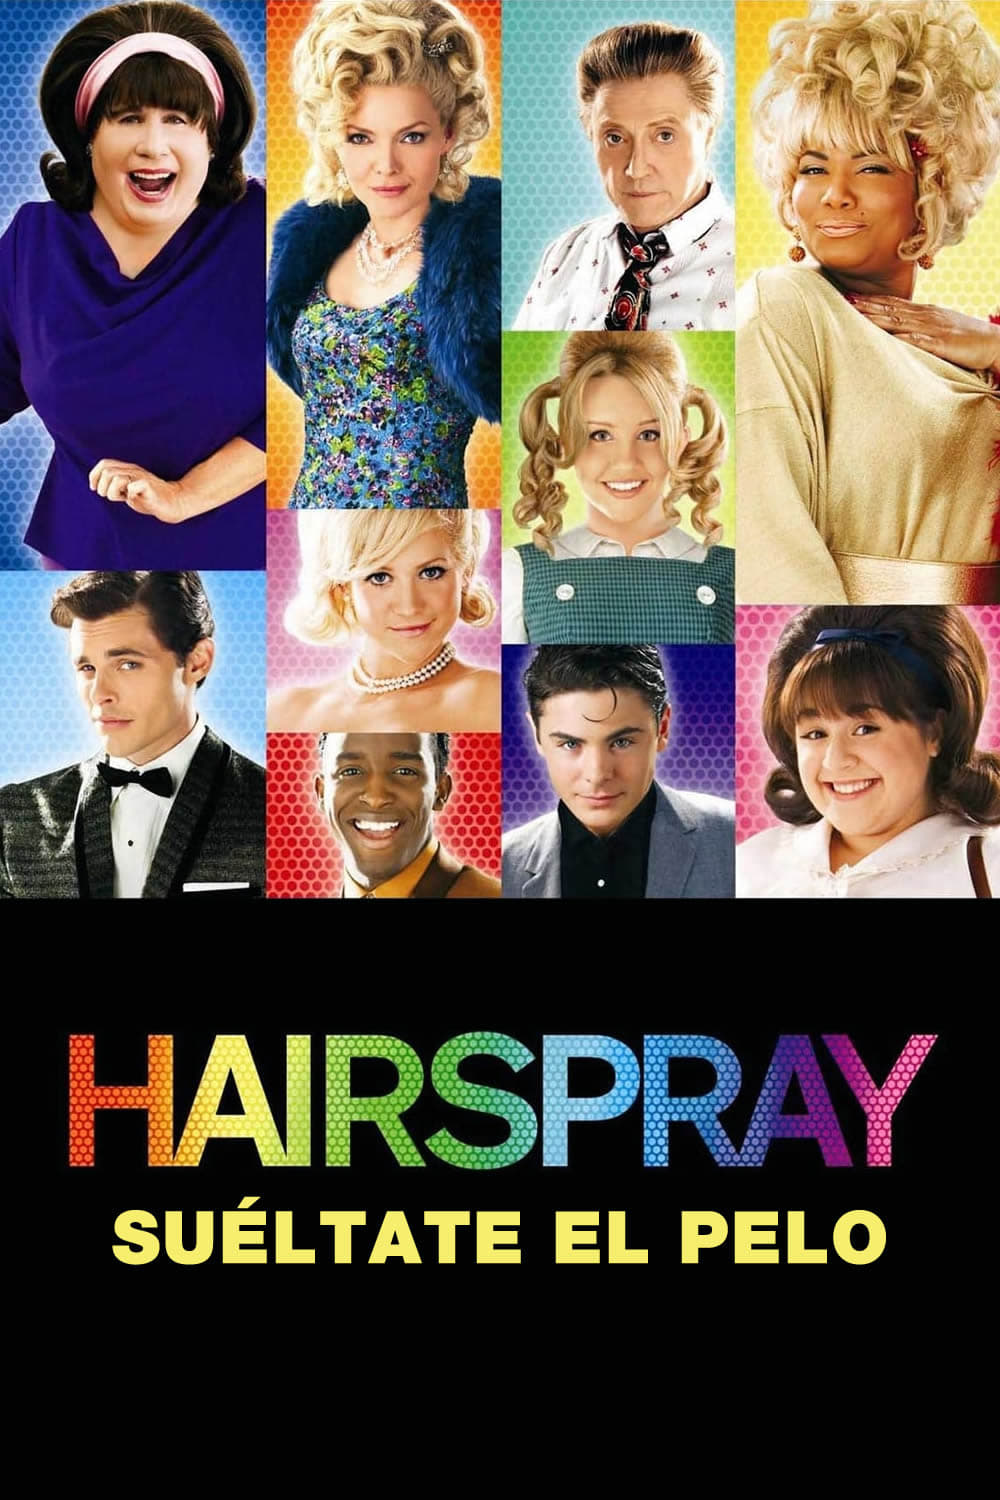 Hairspray Sueltate El Pelo